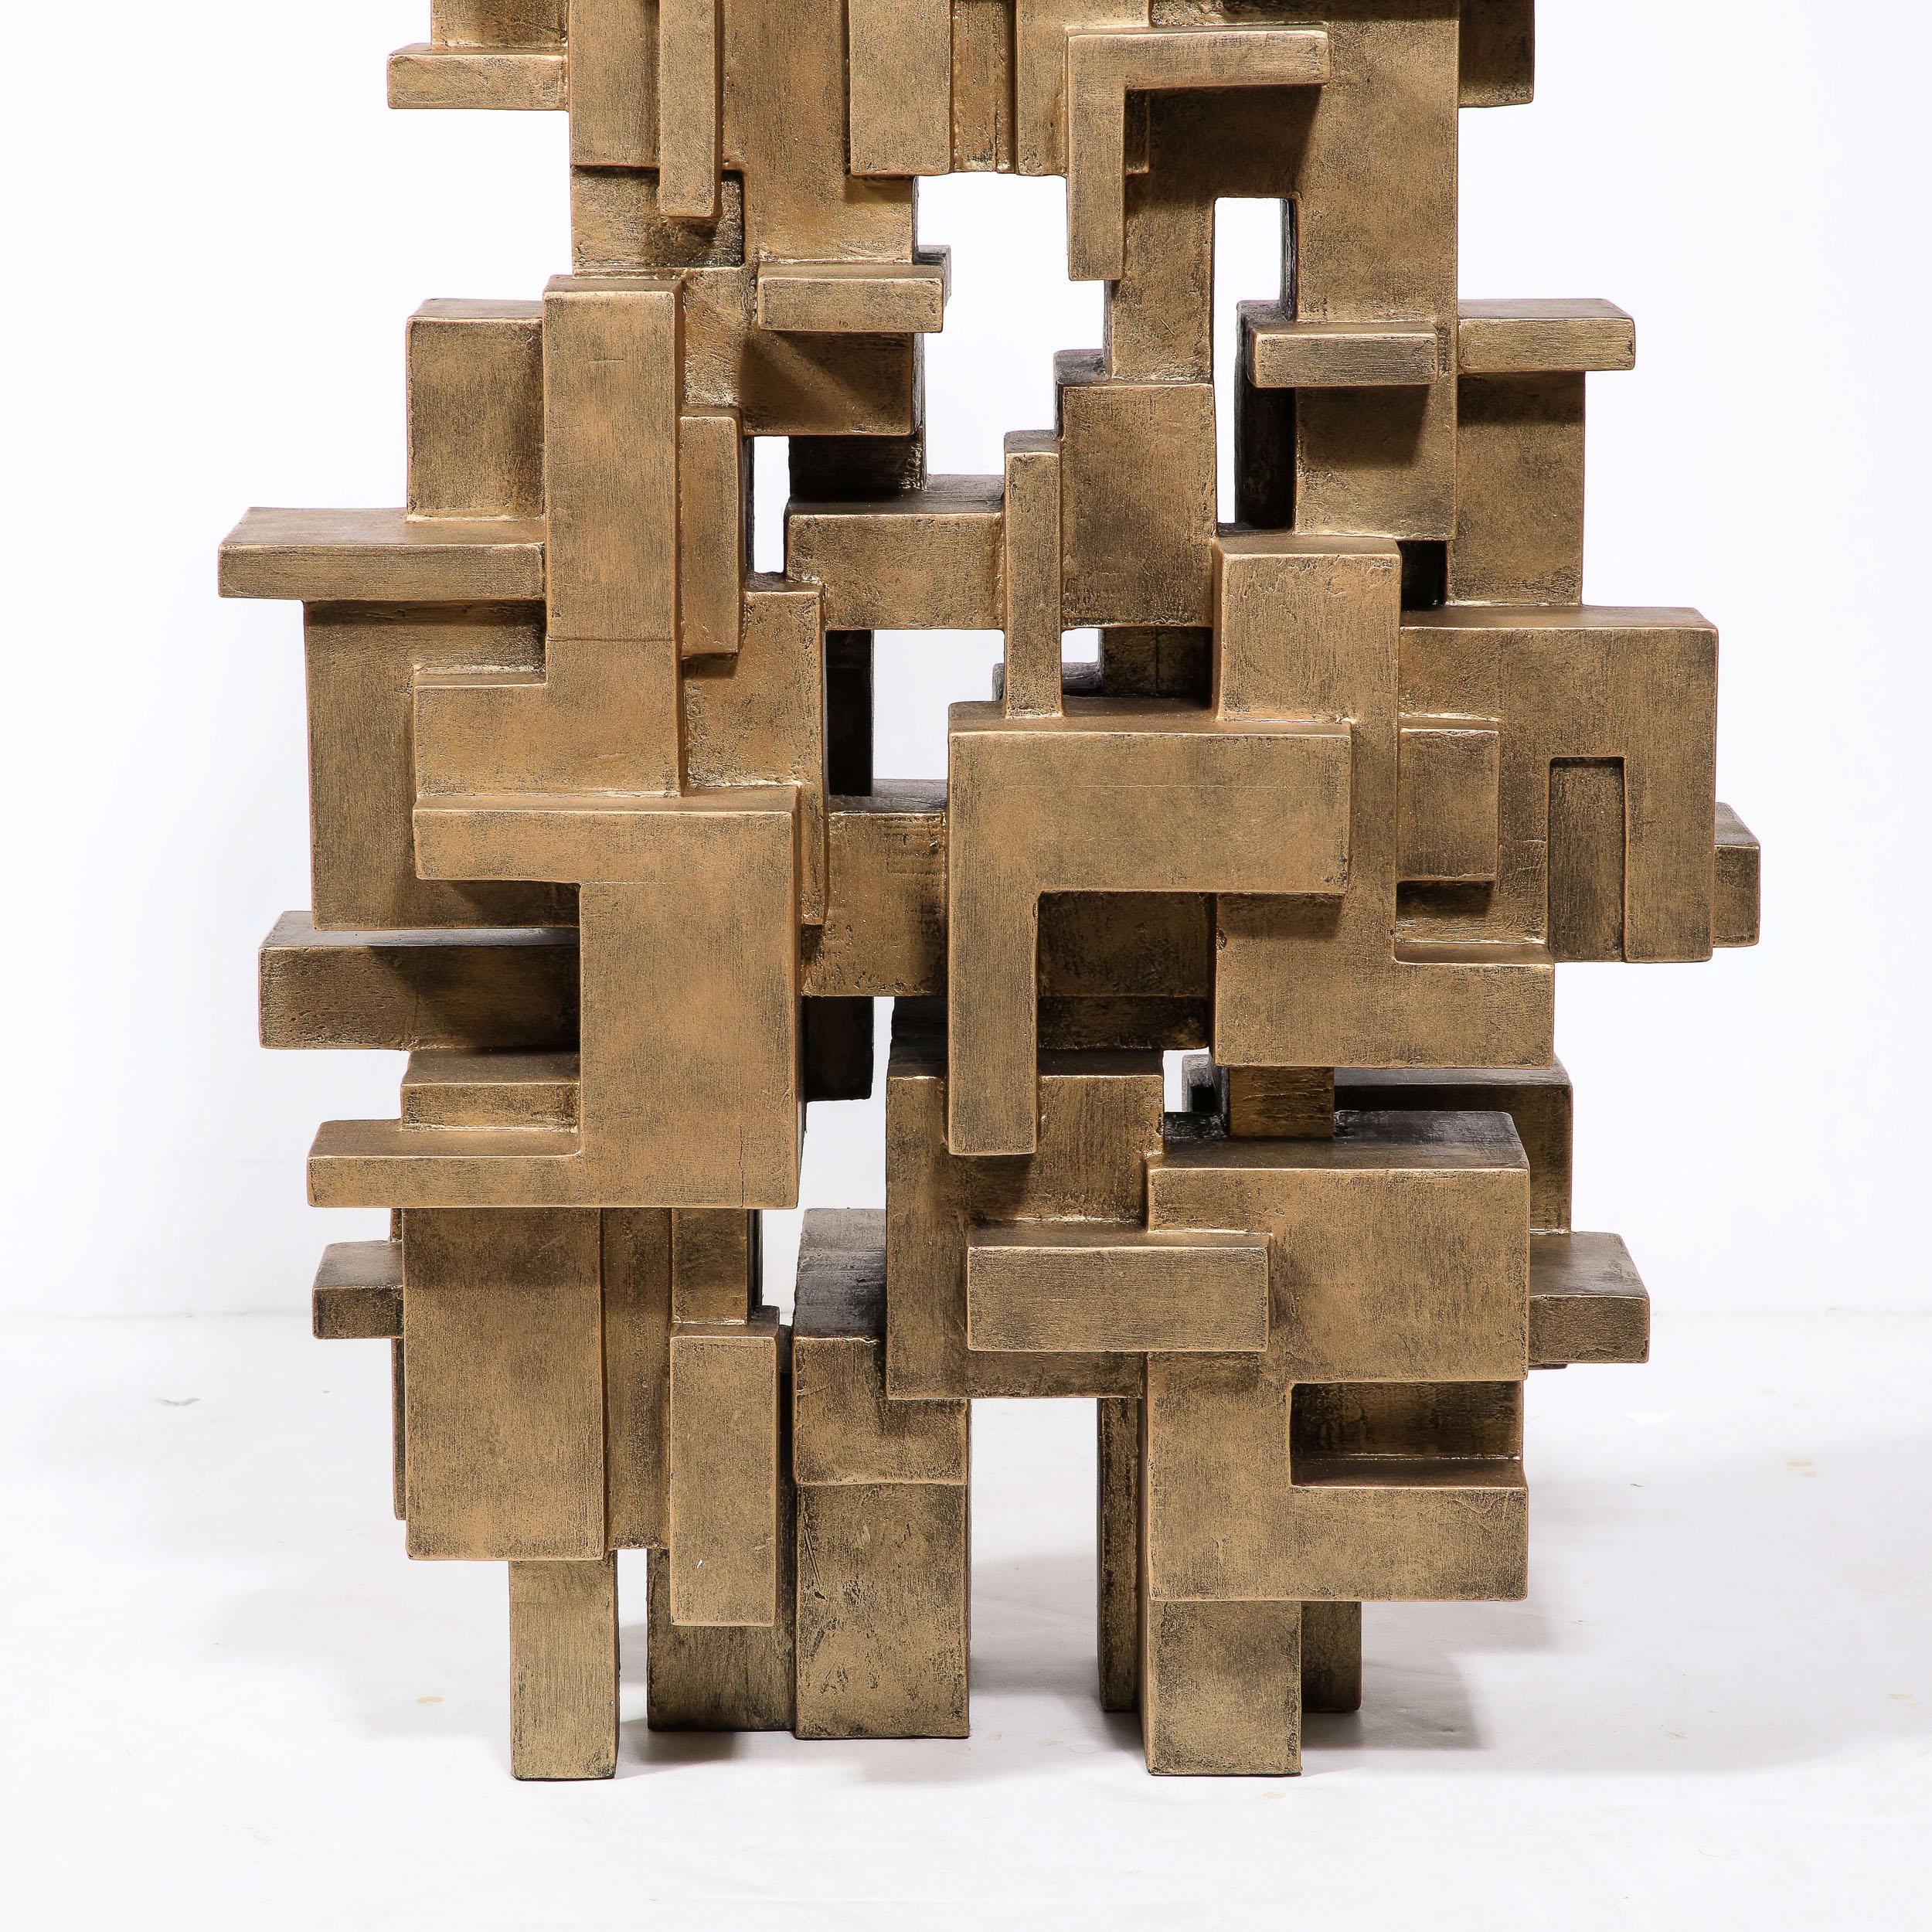 Cette magnifique et dynamique sculpture en grille isométrique a été réalisée par l'estimé artiste américain Dan Schneiger aux États-Unis vers 2010. En dialogue avec le travail des grands maîtres du 20e siècle, Louise Nevelson et Antoni Gormley,